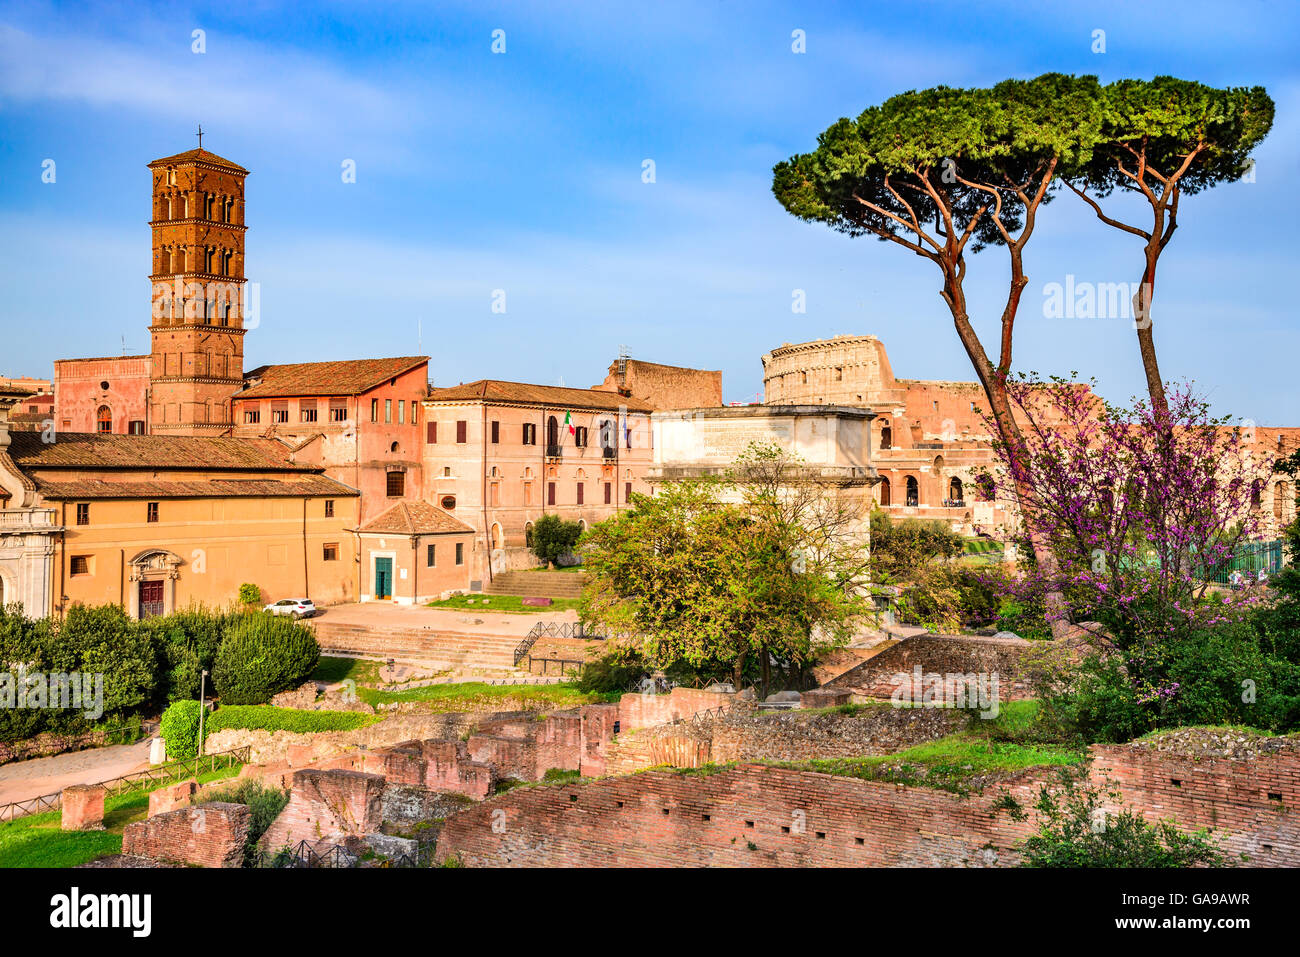 Rome, Italie. Paysage étonnant avec les ruines du Forum Romain et du Colisée, l'amphithéâtre Flavien. Banque D'Images